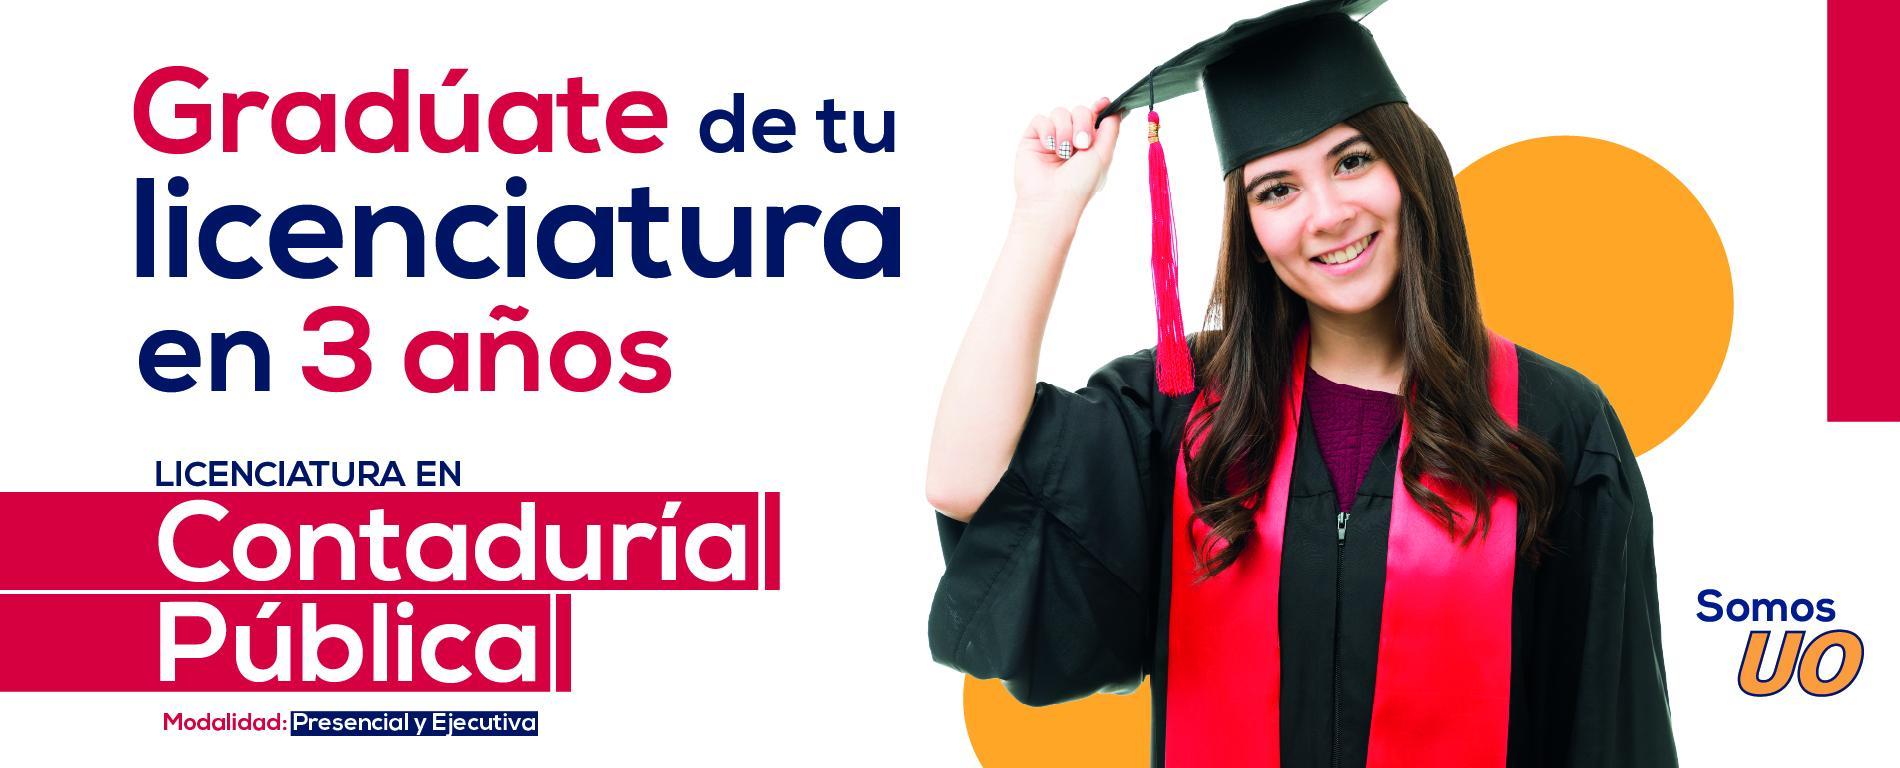 Licenciatura en Contaduría Pública Universidad de Oriente Veracruz